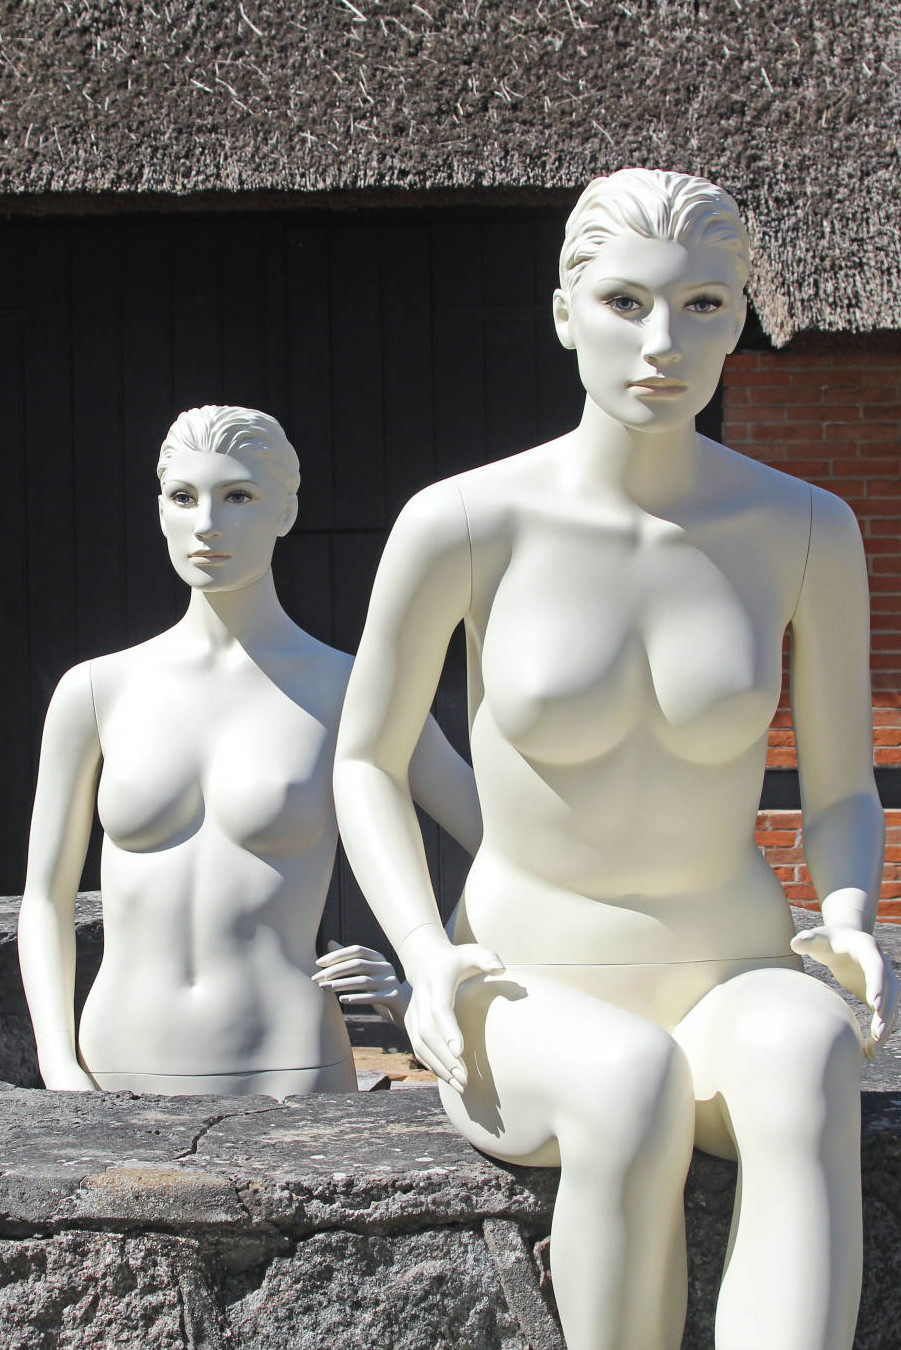 Damemannequinen fås i forskellige modeller i både stående og siddende positioner